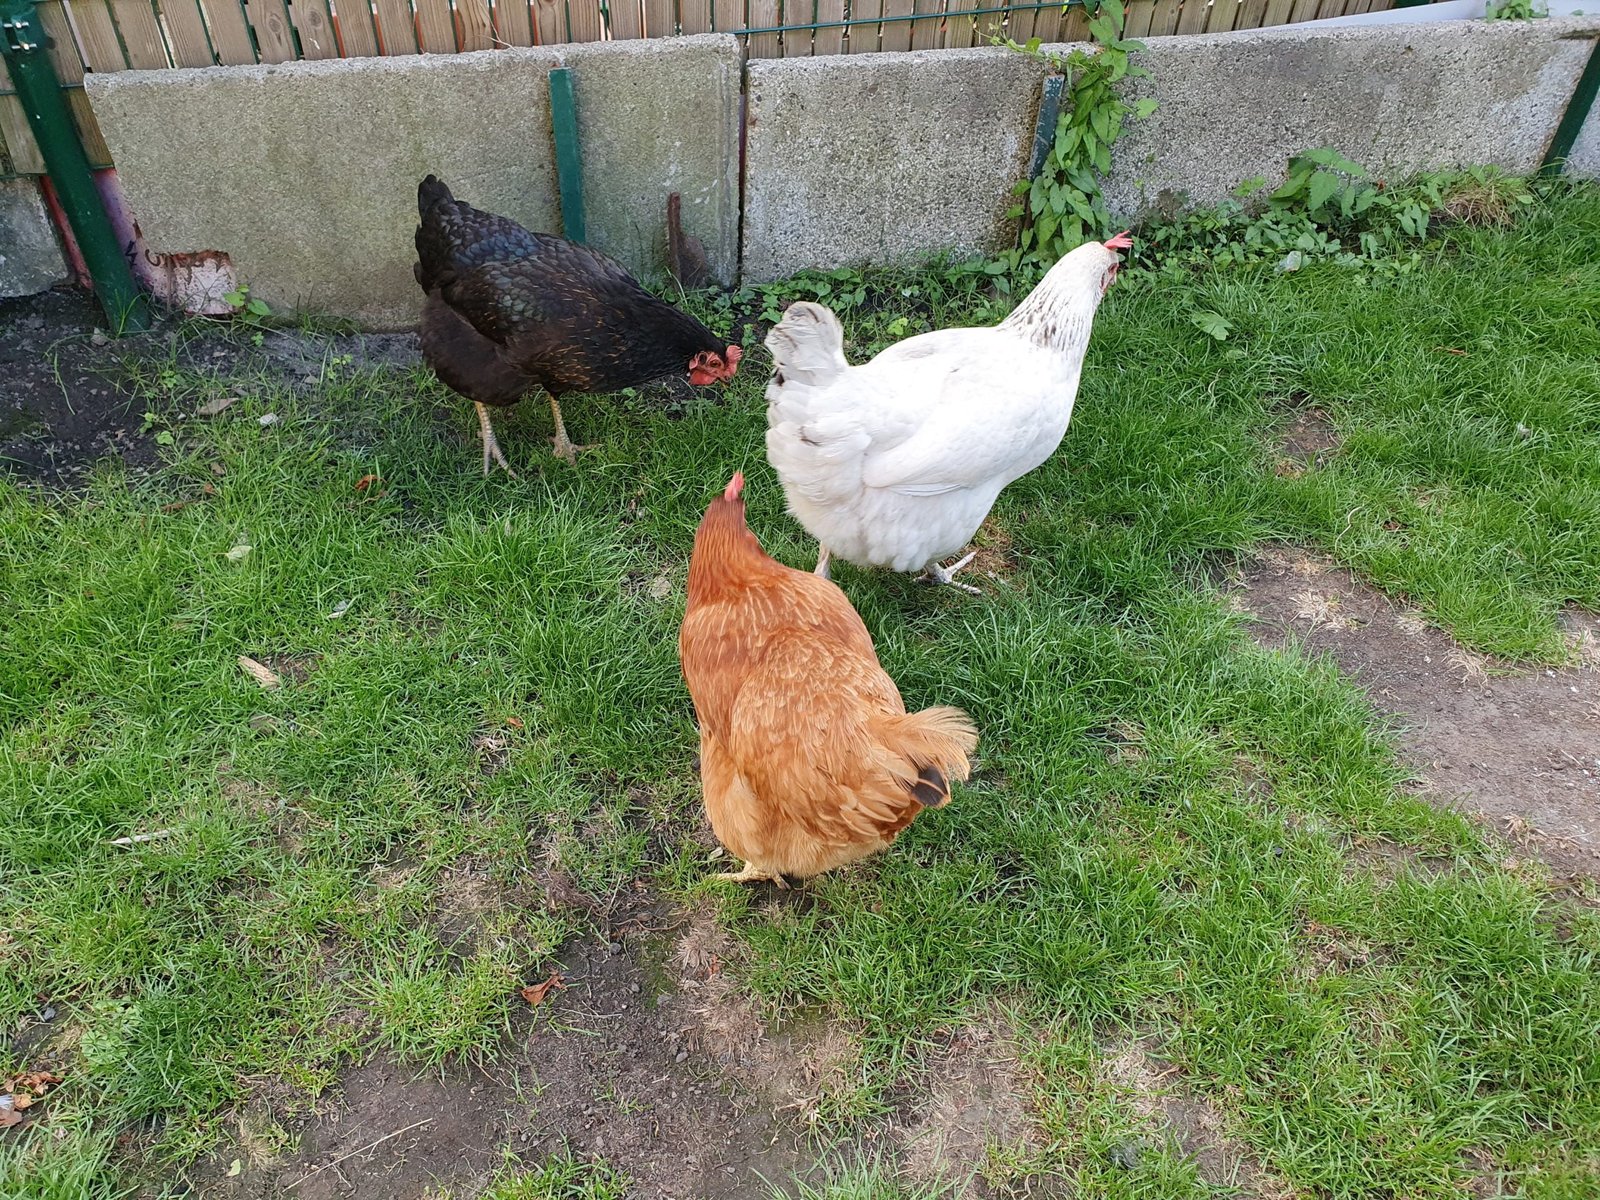 Elever des poules dans son jardin